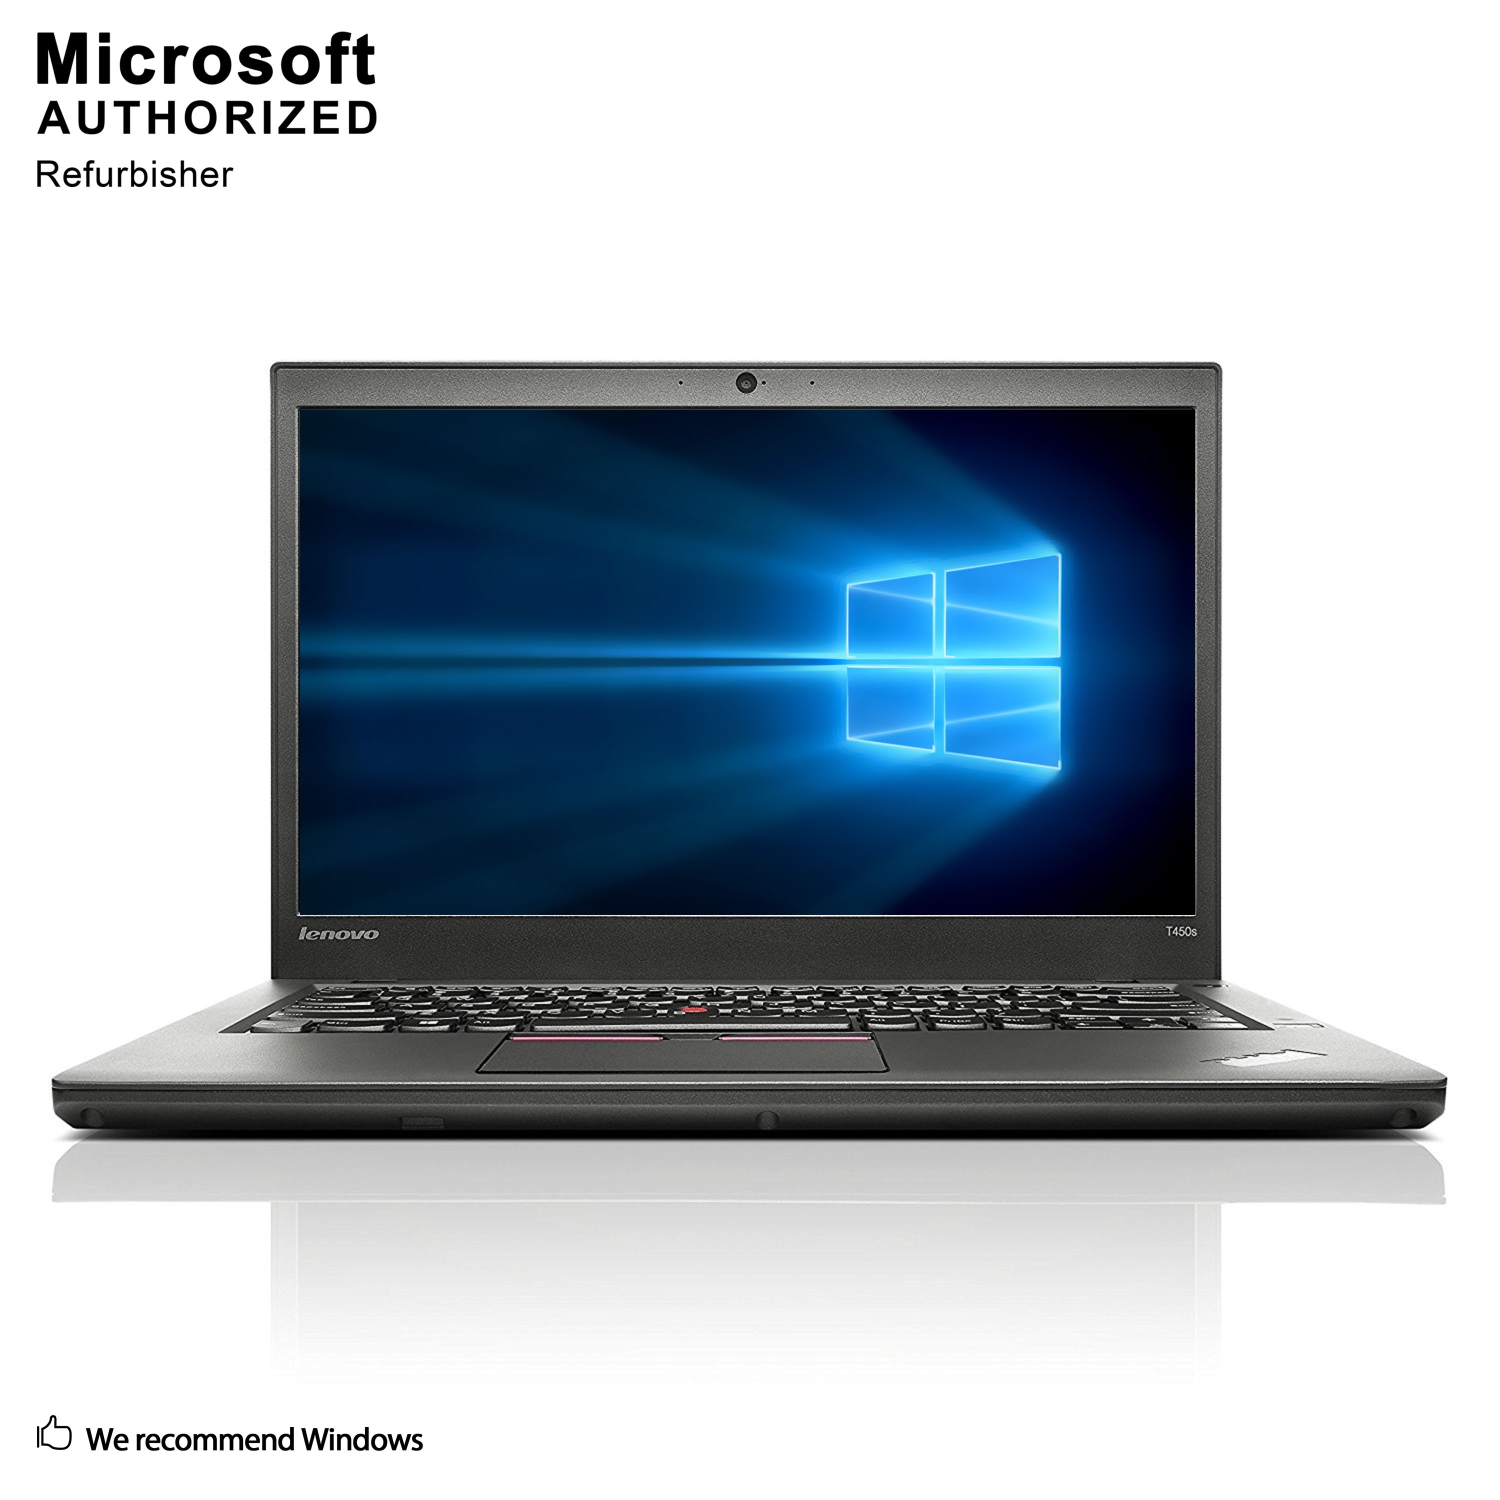 Refurbished (Excellent) - Lenovo ThinkPad T450s 14" Laptop, Intel Core i5 5300U up to 2.9GHz, 8G DDR3L, 1T SSD, Win10 Home 64 Bit (EN/FR/ES)